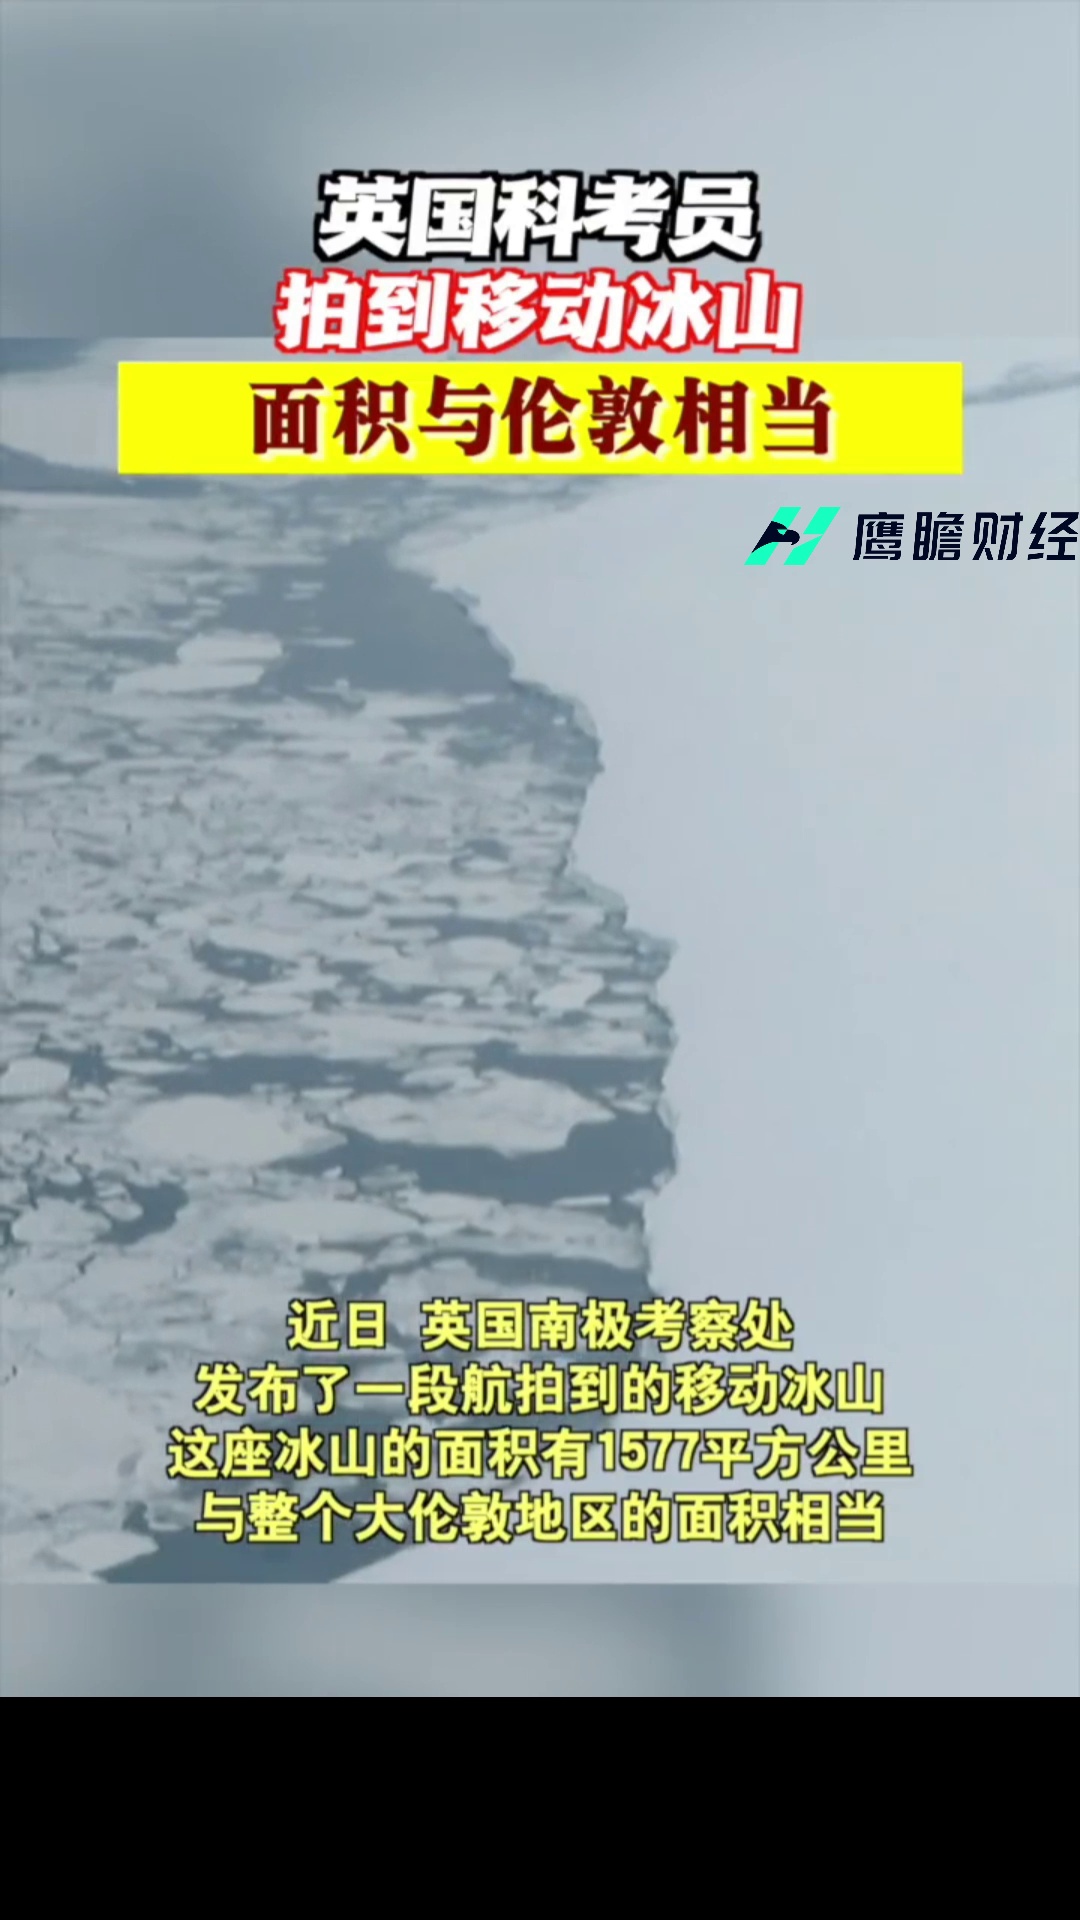 英国科考员拍到移动冰山 向南移动150公里 面积与伦敦相当